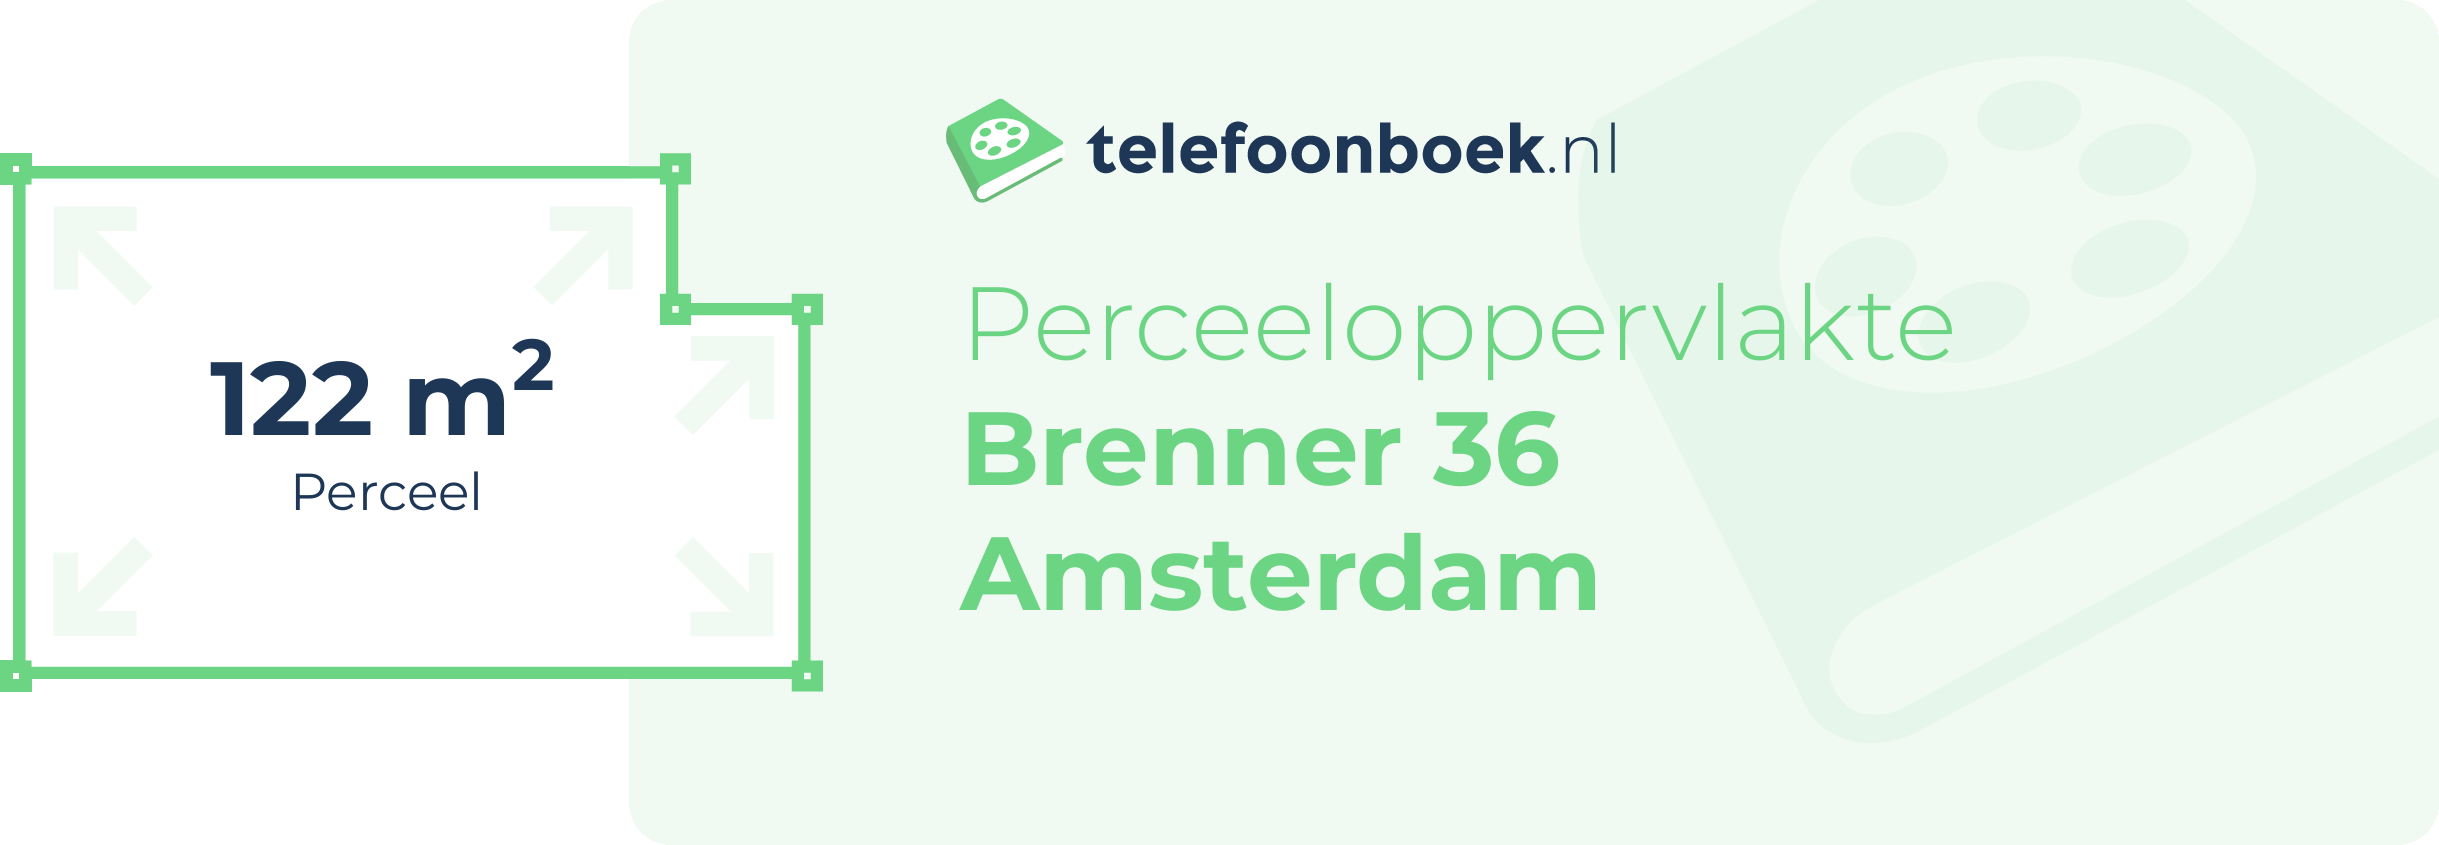 Perceeloppervlakte Brenner 36 Amsterdam